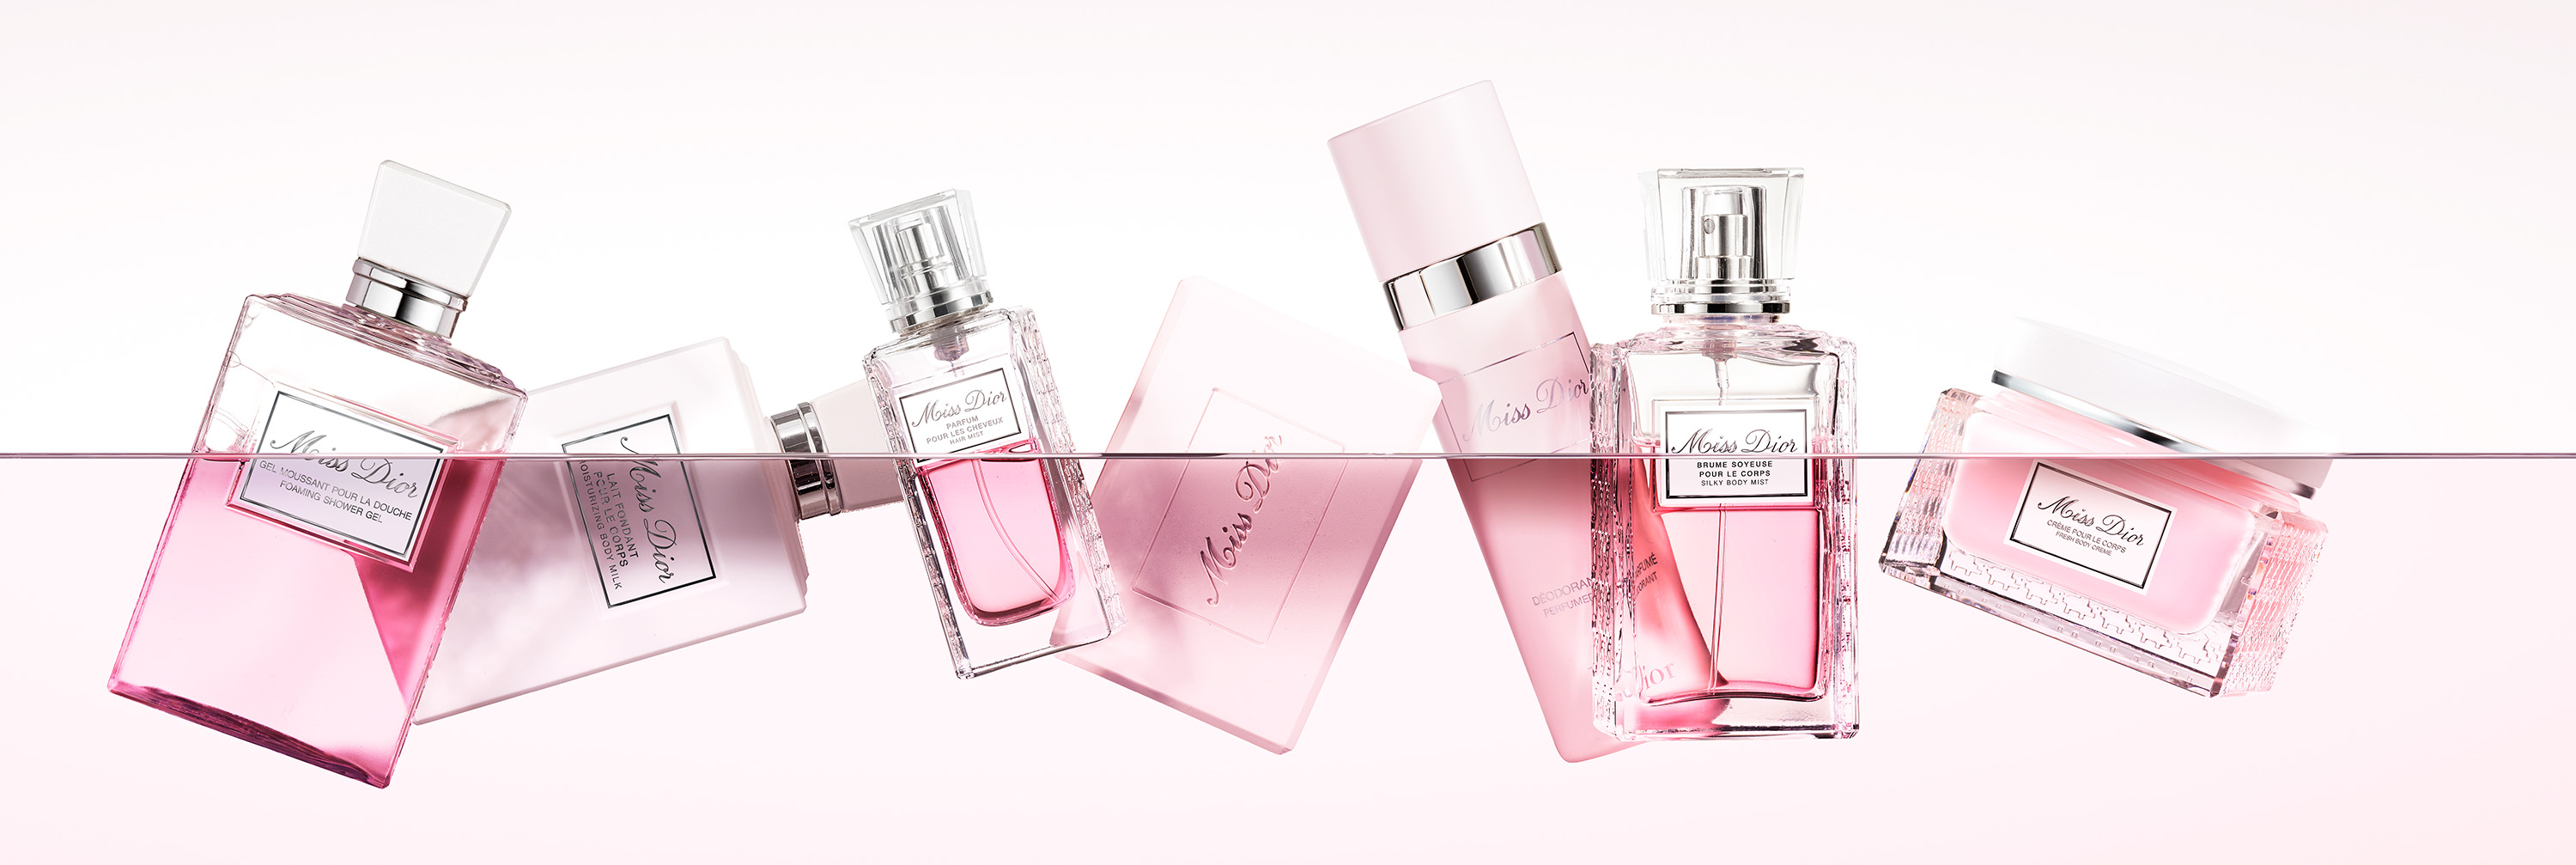 Miss Dior Foaming Shower Gel  Perfume Fragancia